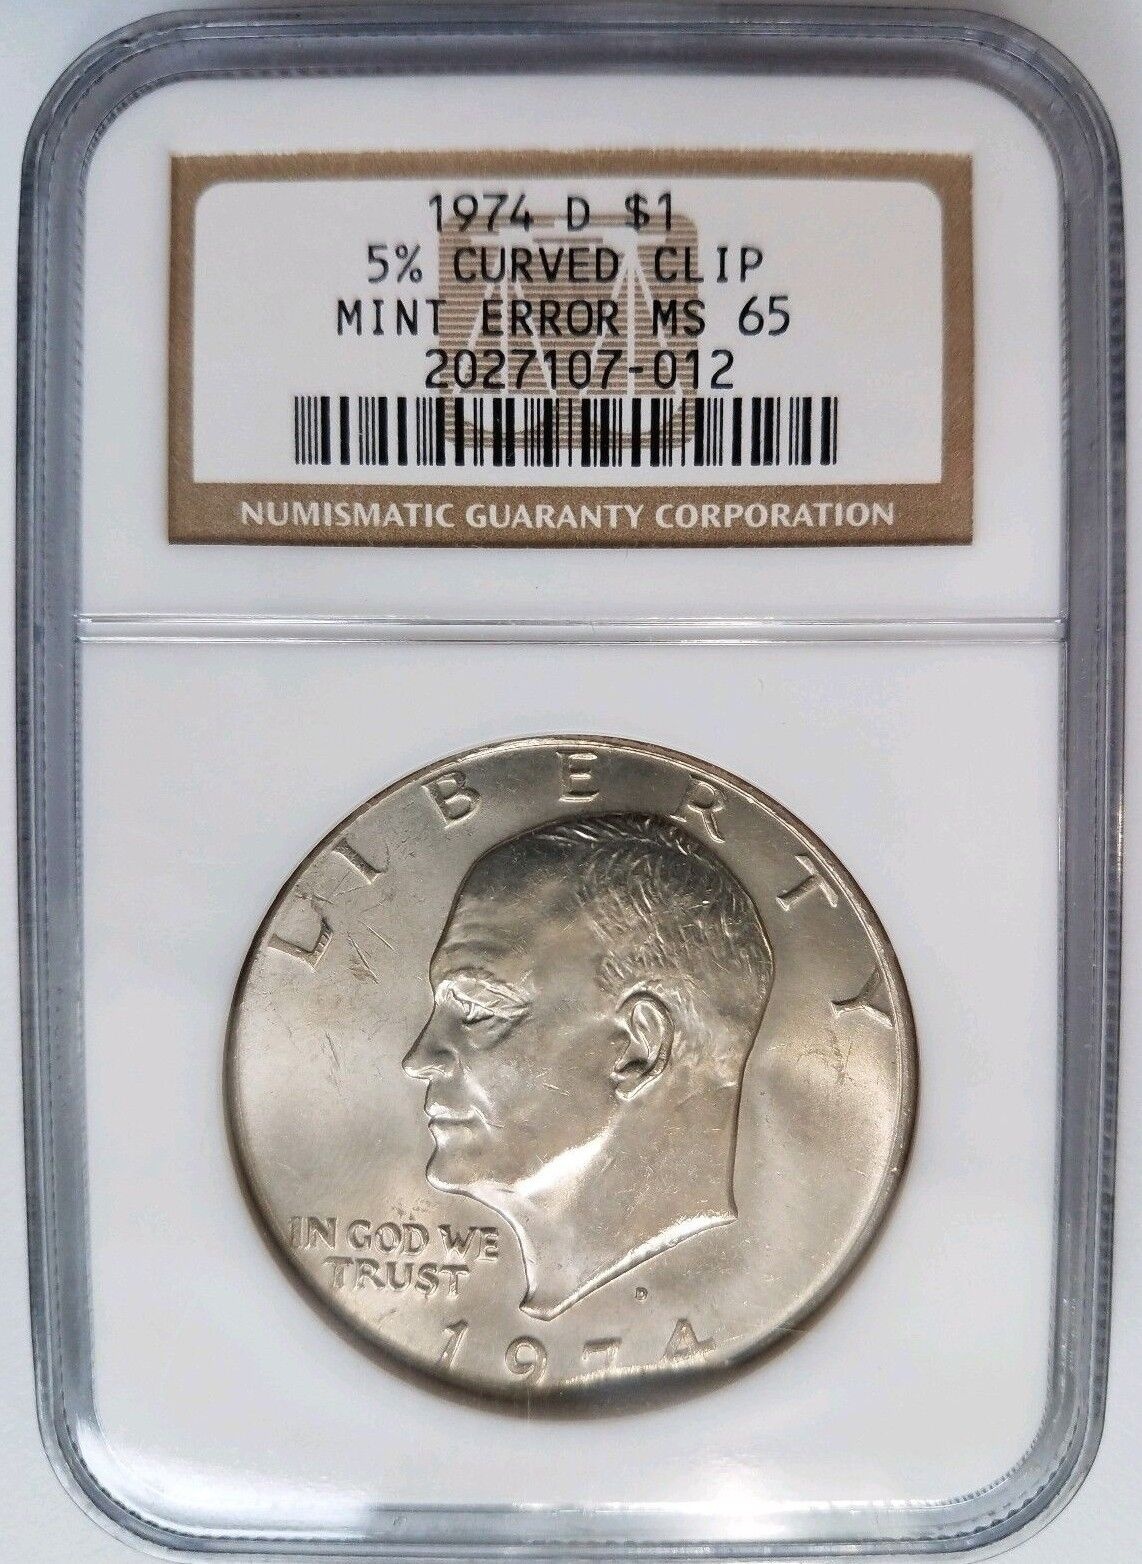  アンティークコイン コイン 金貨 銀貨  [送料無料] 1974 D Eisenhower Dollar IKE NGC MS 65 Curved Clip 5% Clipped Mint Error Coin